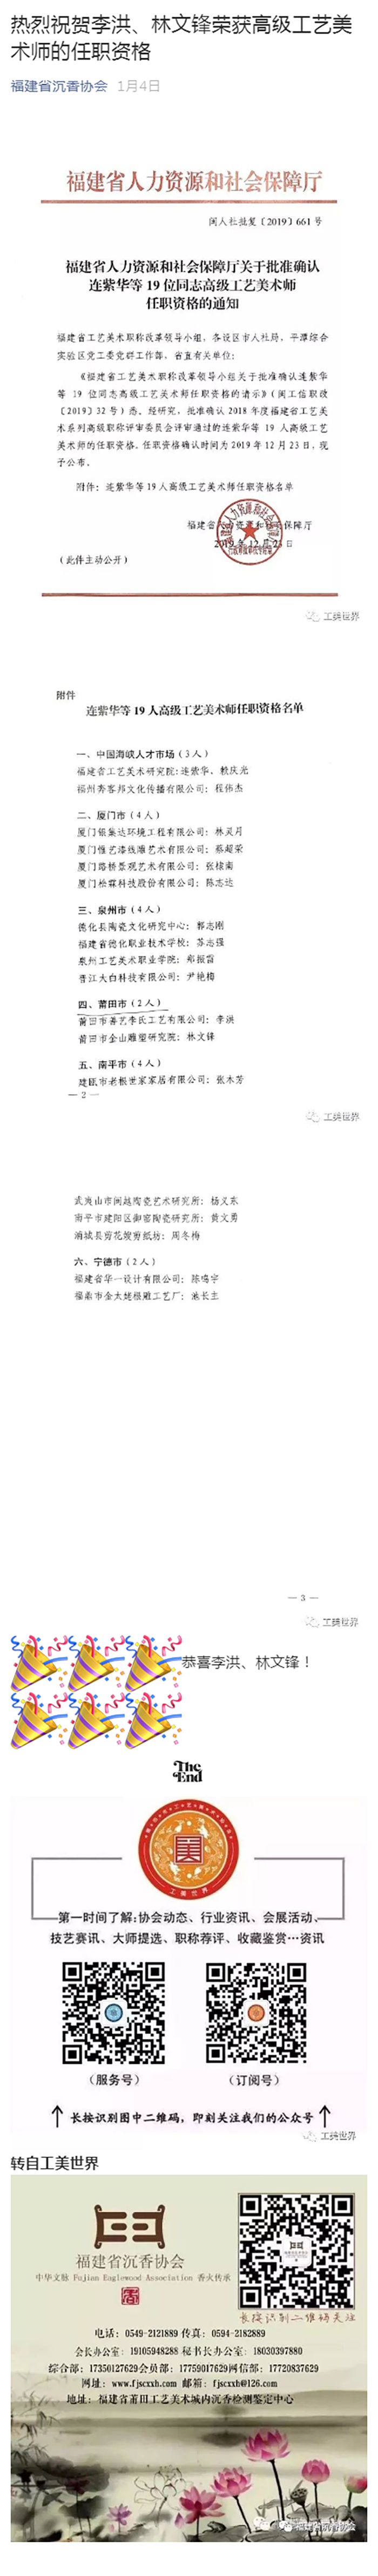 热烈祝贺李洪、林文锋荣获高级工艺美术师的任职资格-14432333922